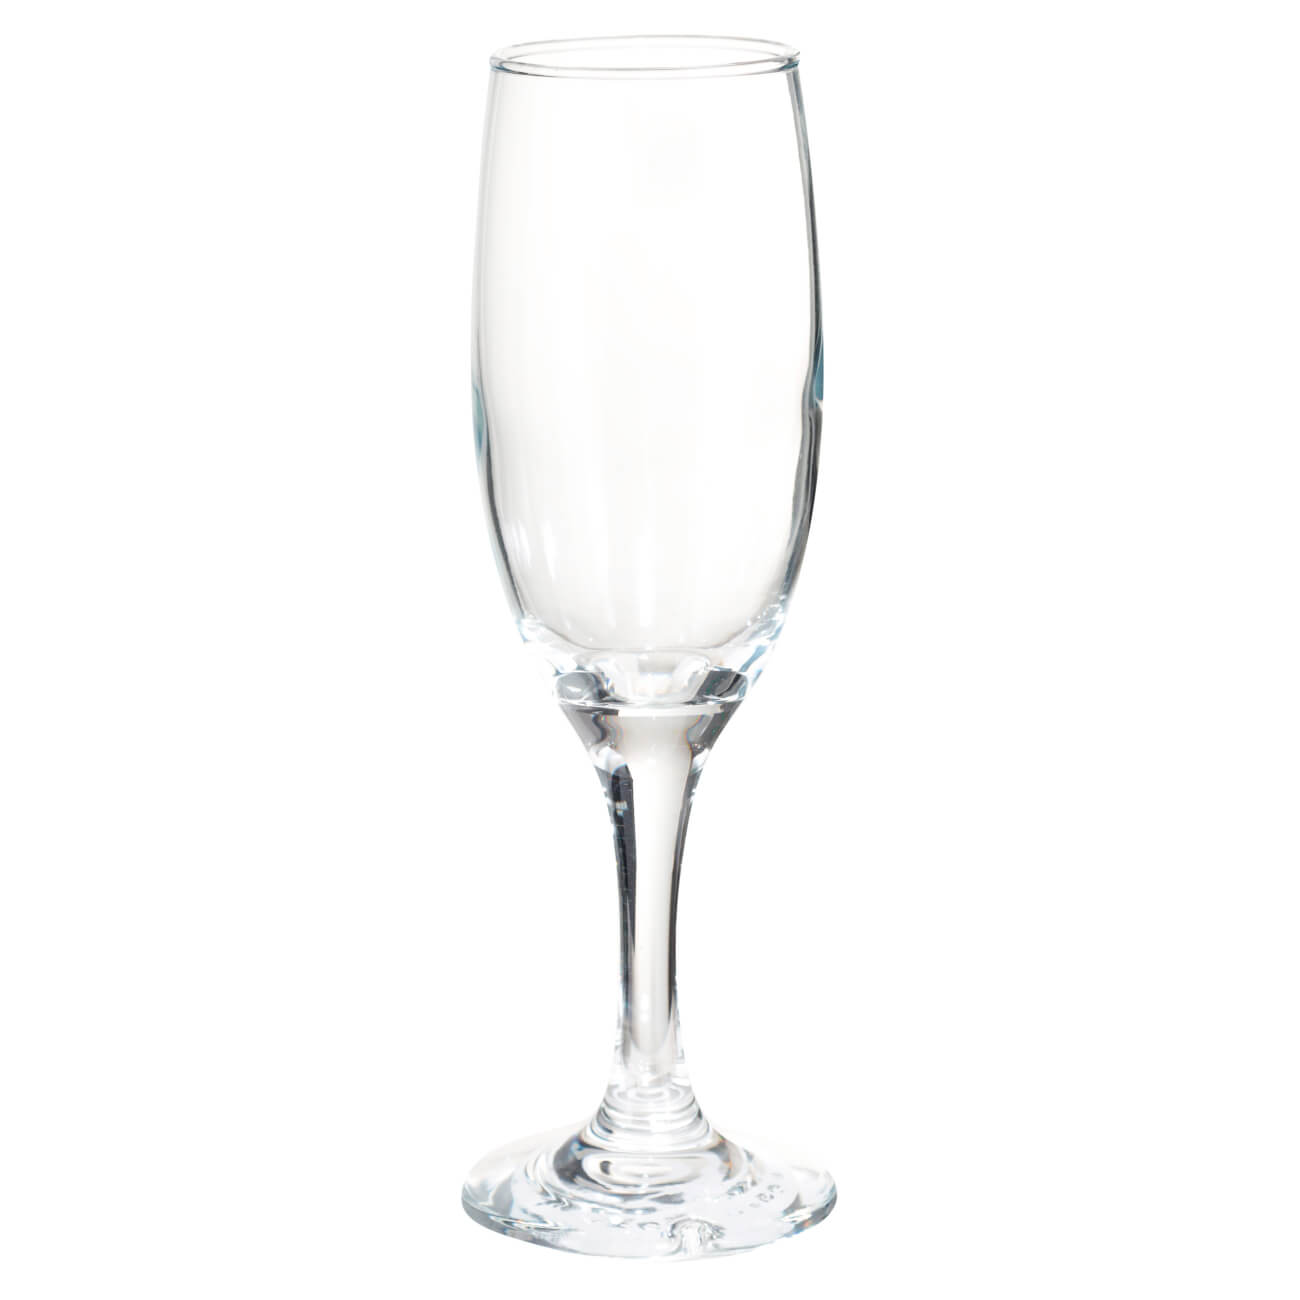 Бокал для шампанского, 190 мл, стекло, Molino капуста пекинская бокал 0 3 гр цв п